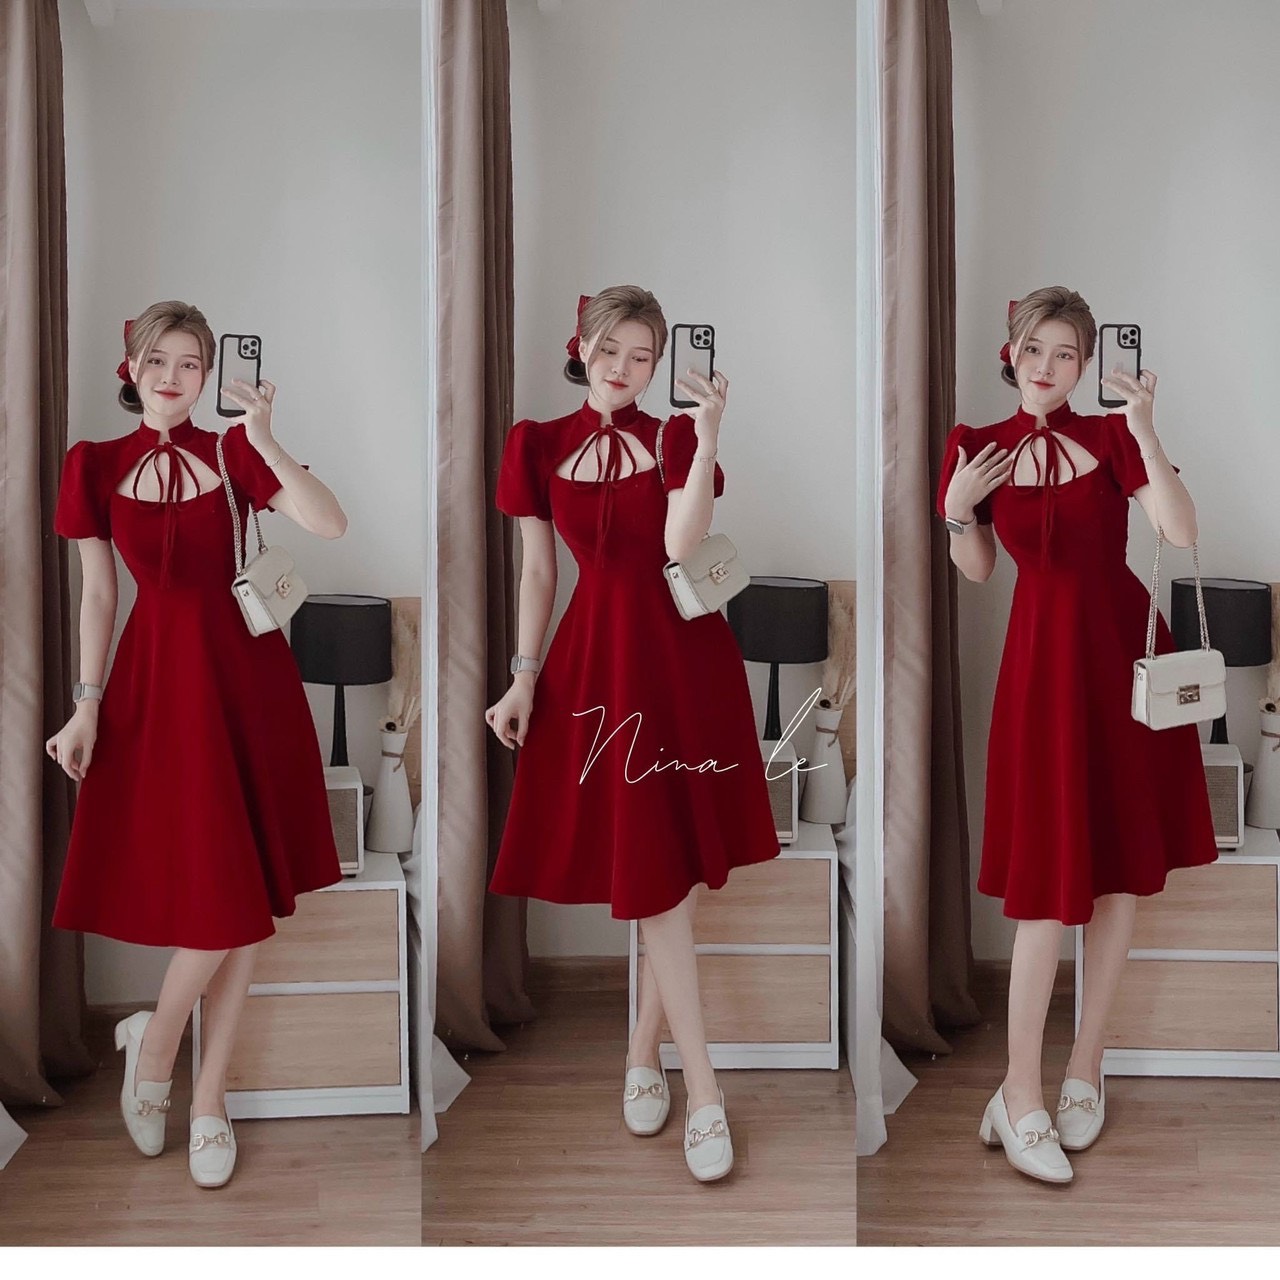 Đầm body xoè khoét eo noel tết màu đỏ dáng ngắn váy nữ kiểu phối ren đi dự  tiệc vải nhung g624